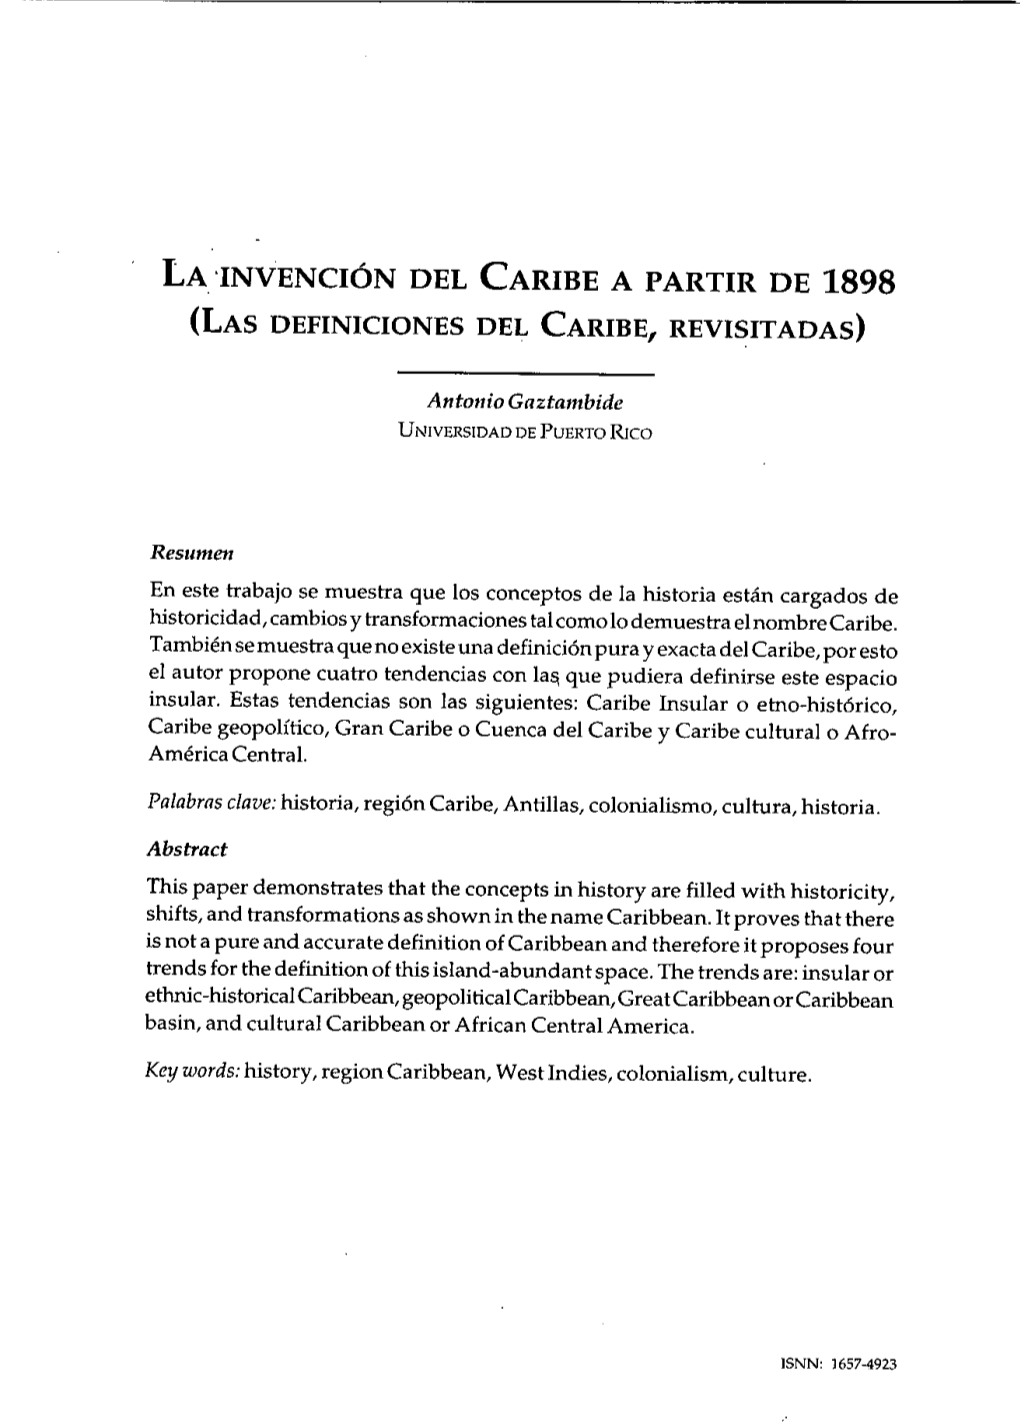 La 'Invención Del Caribe a Partir De 1898 (Las Definiciones Del Caribe, Revisitadas)